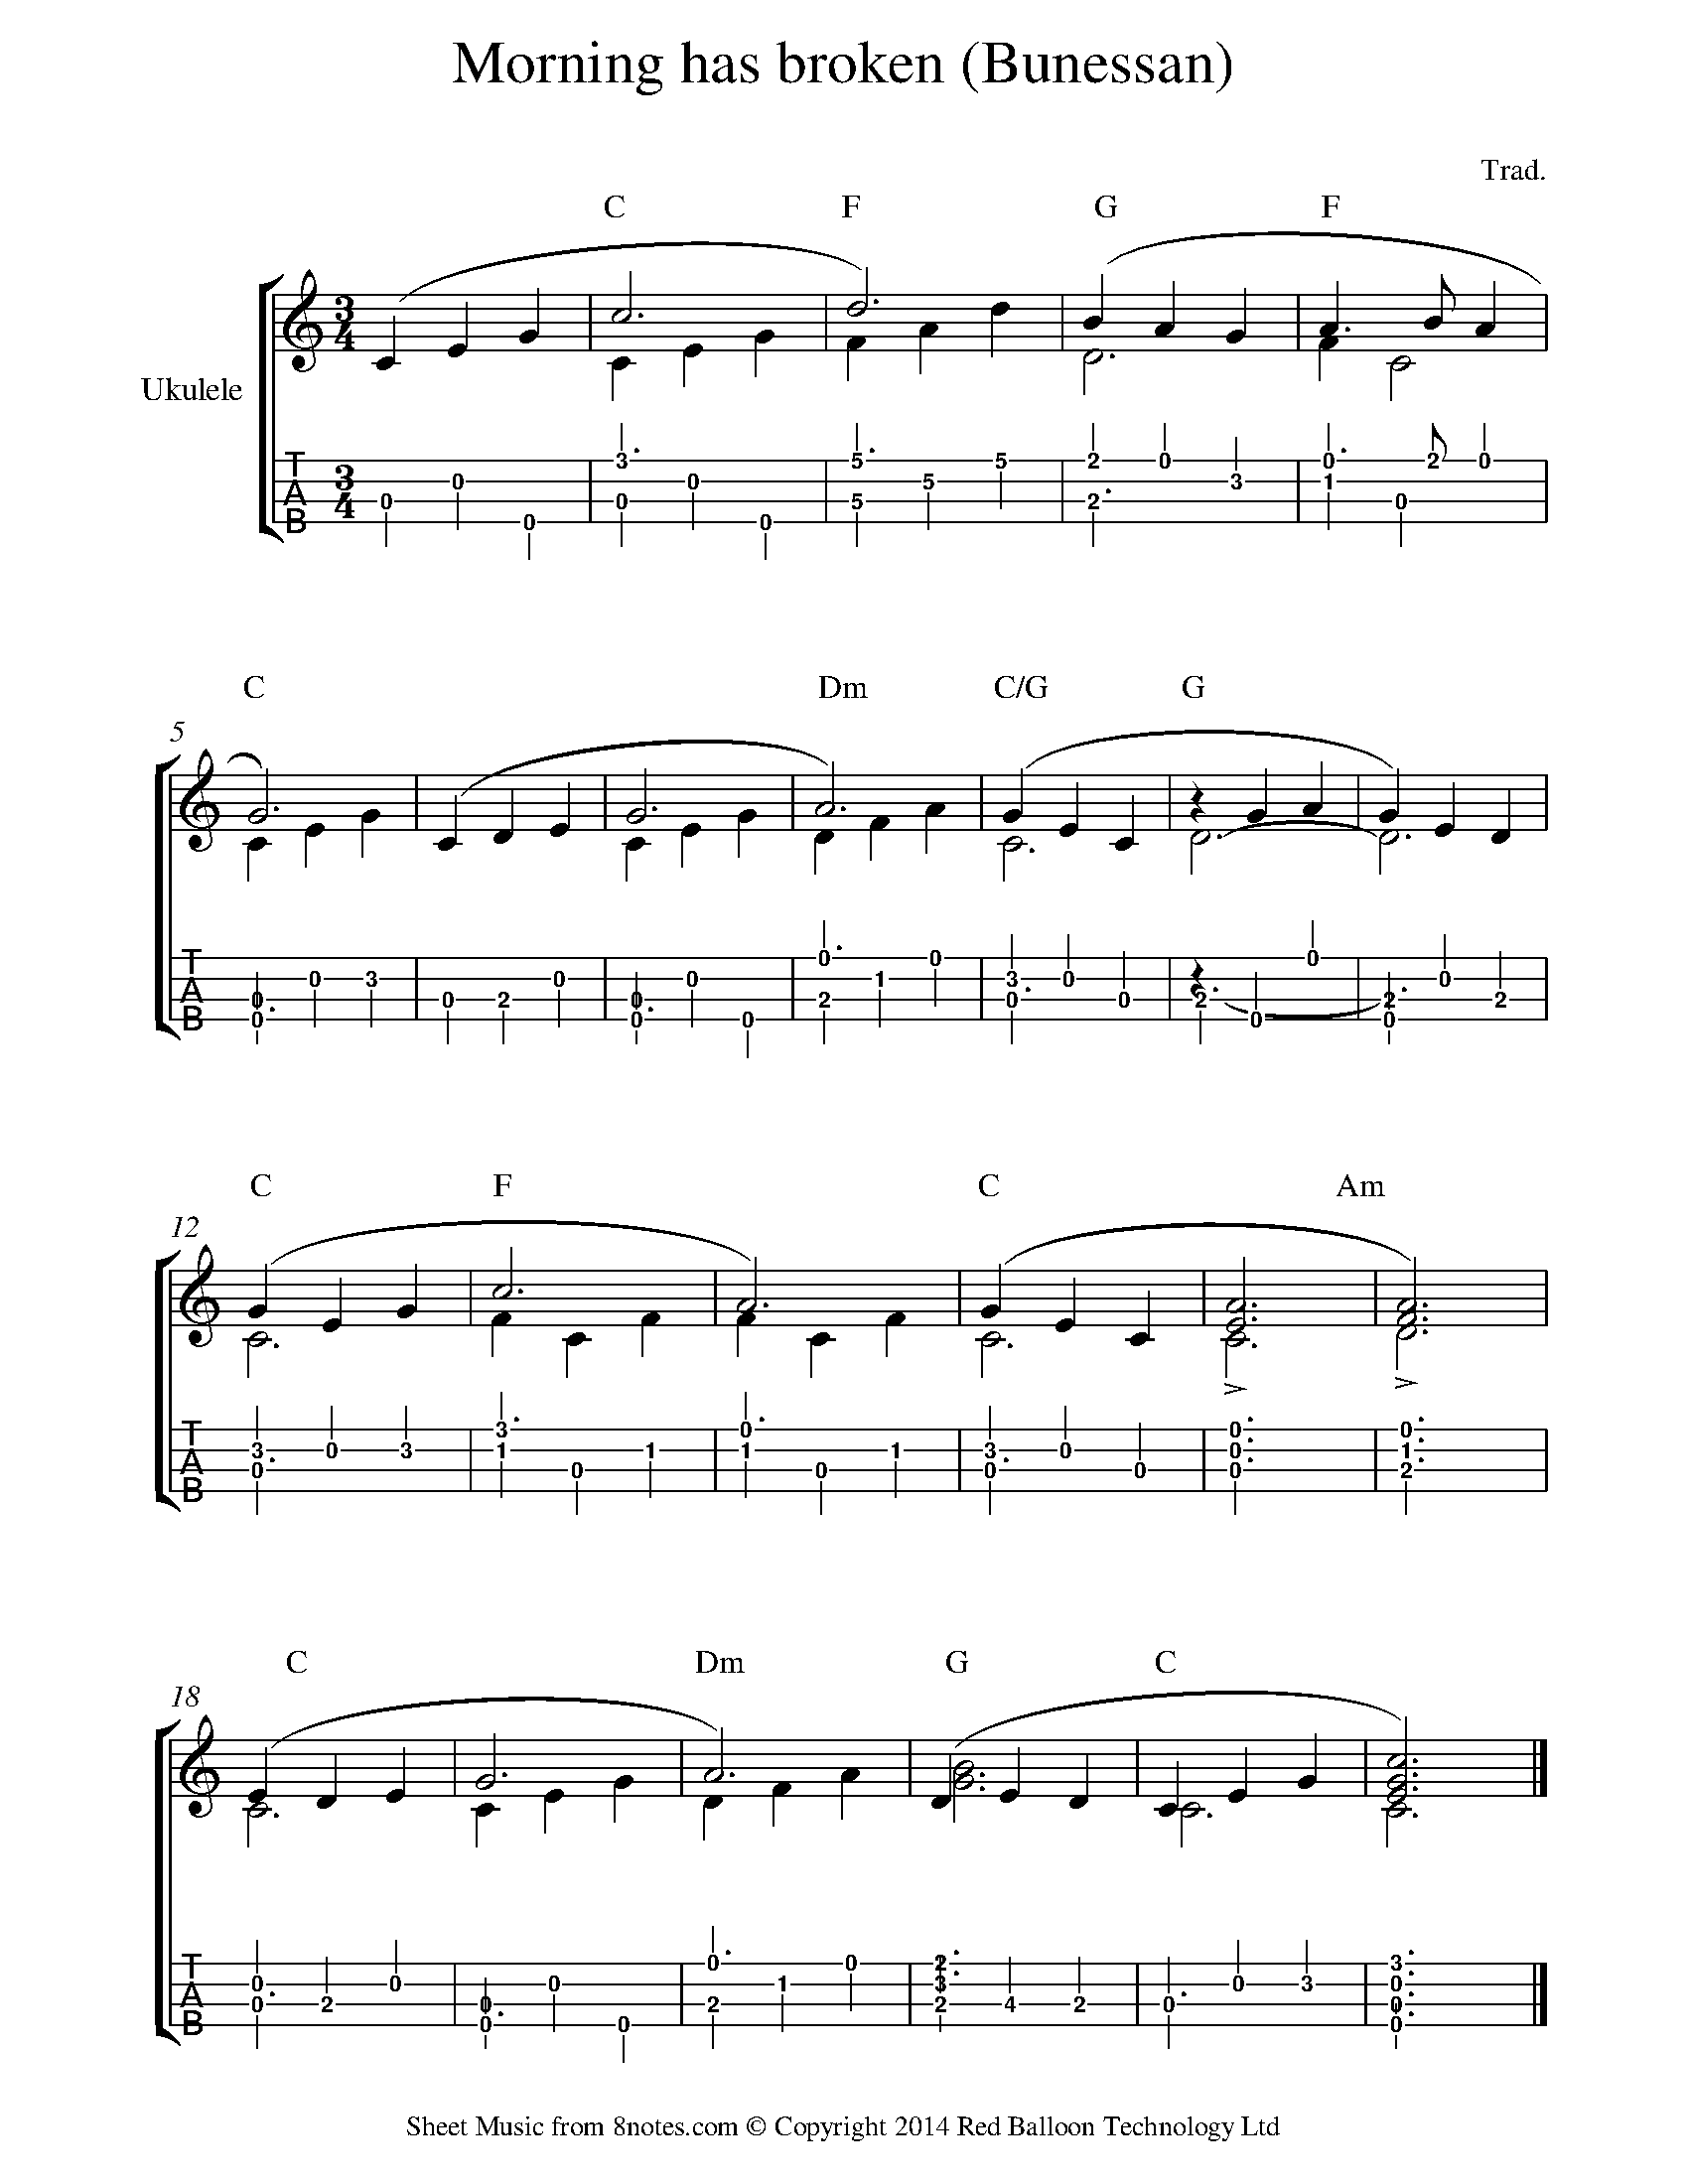 Ukulele Sheet Music, Lessons & Resources 8notes.com